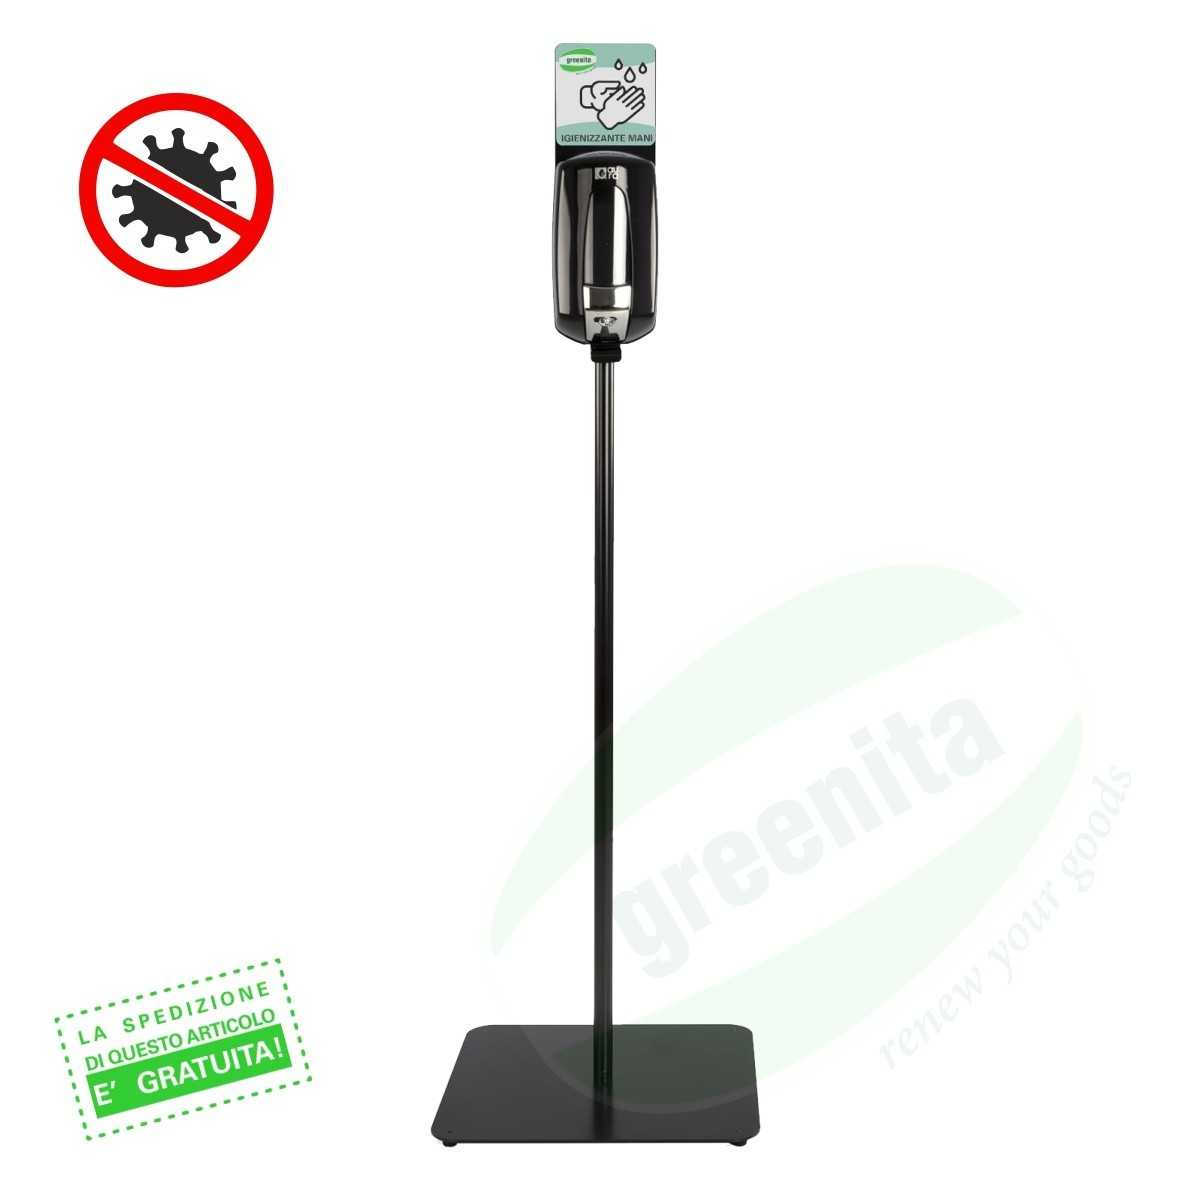 Colonnina Igienizzante con Dispenser per Gel Igienizzante/Disinfettante Mani - FINITURA METALLO VERNICIATO BIANCO